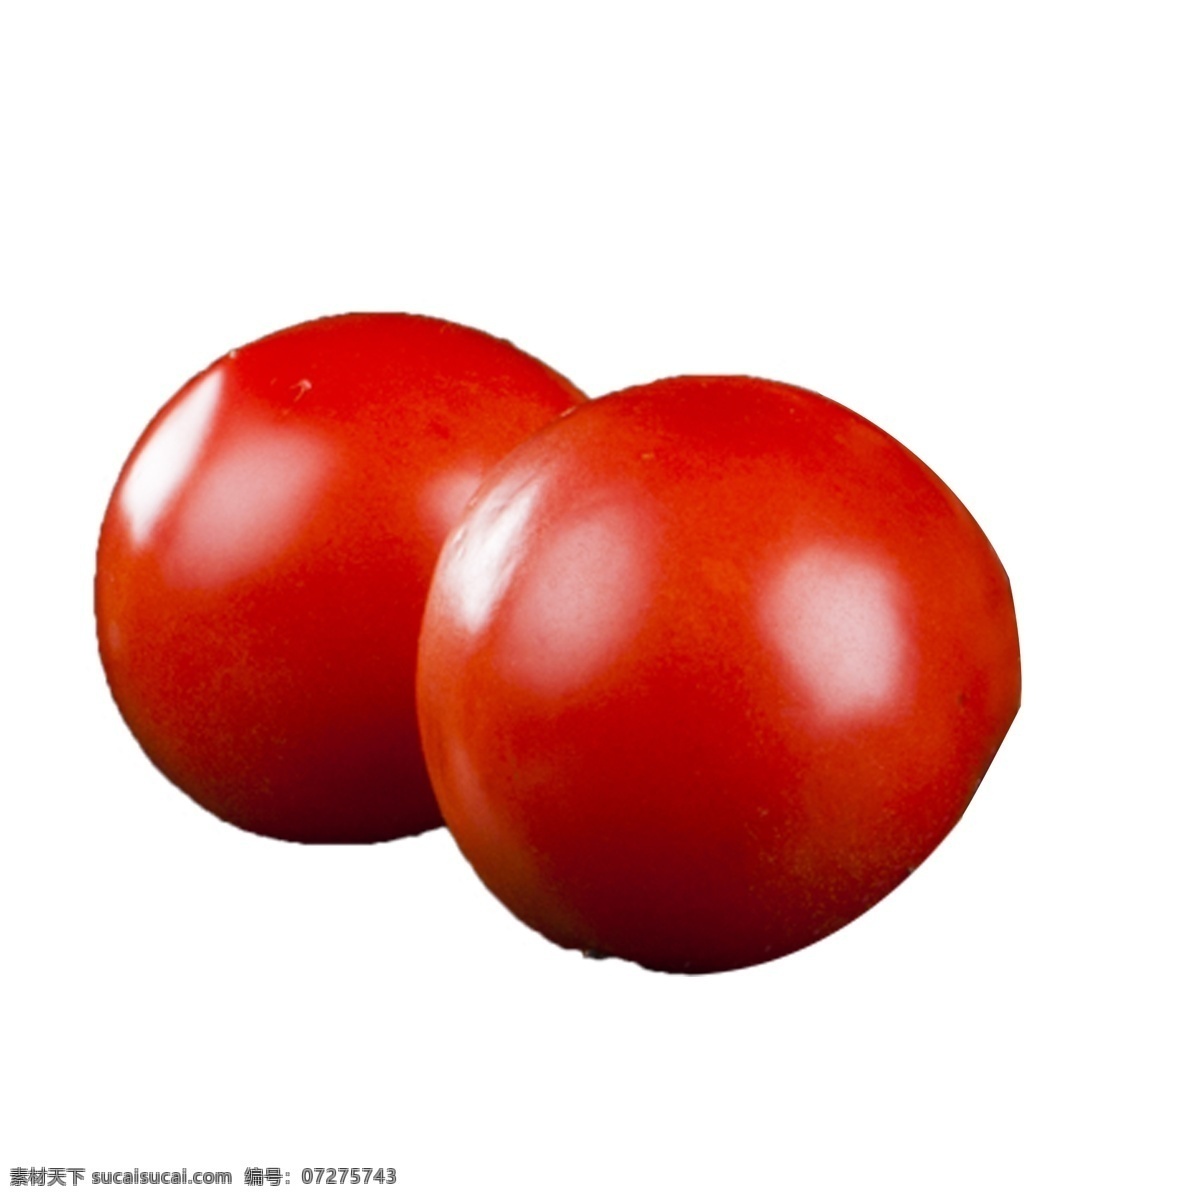 红色 蔬菜 西红柿 番茄 做 饭食 材 免 扣 做饭 食材 免扣 红彤彤 番茄炒蛋搭配 农产品